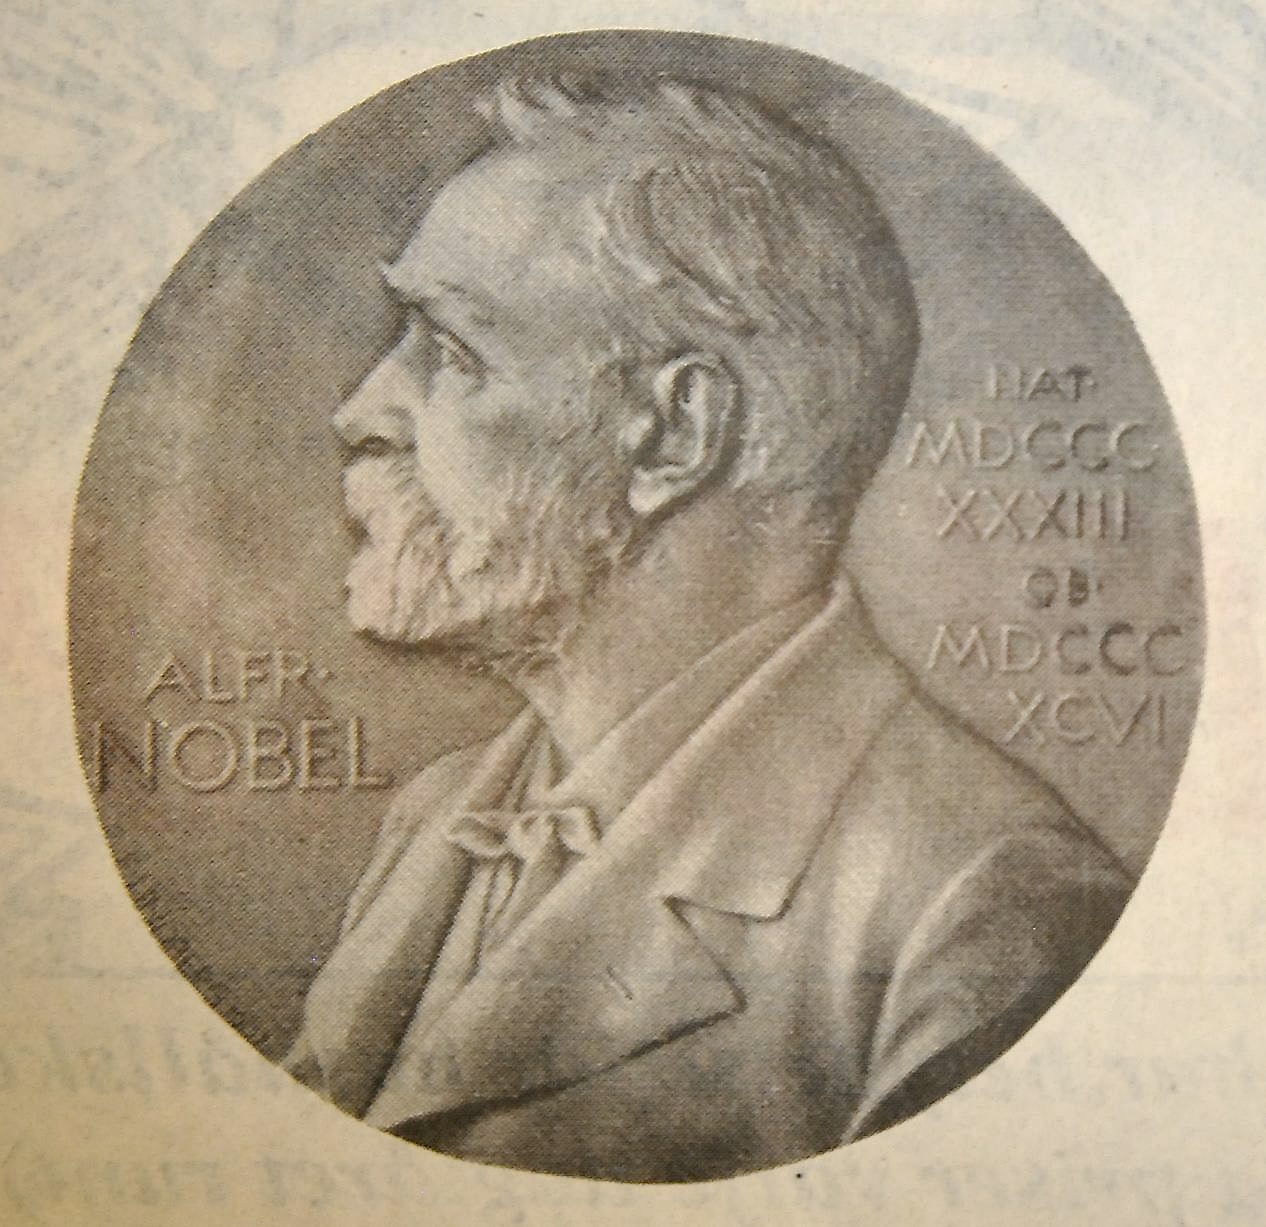 Aktuell profil – Alfred Nobels – från den svenska nobelmedaljen.
Arkiv